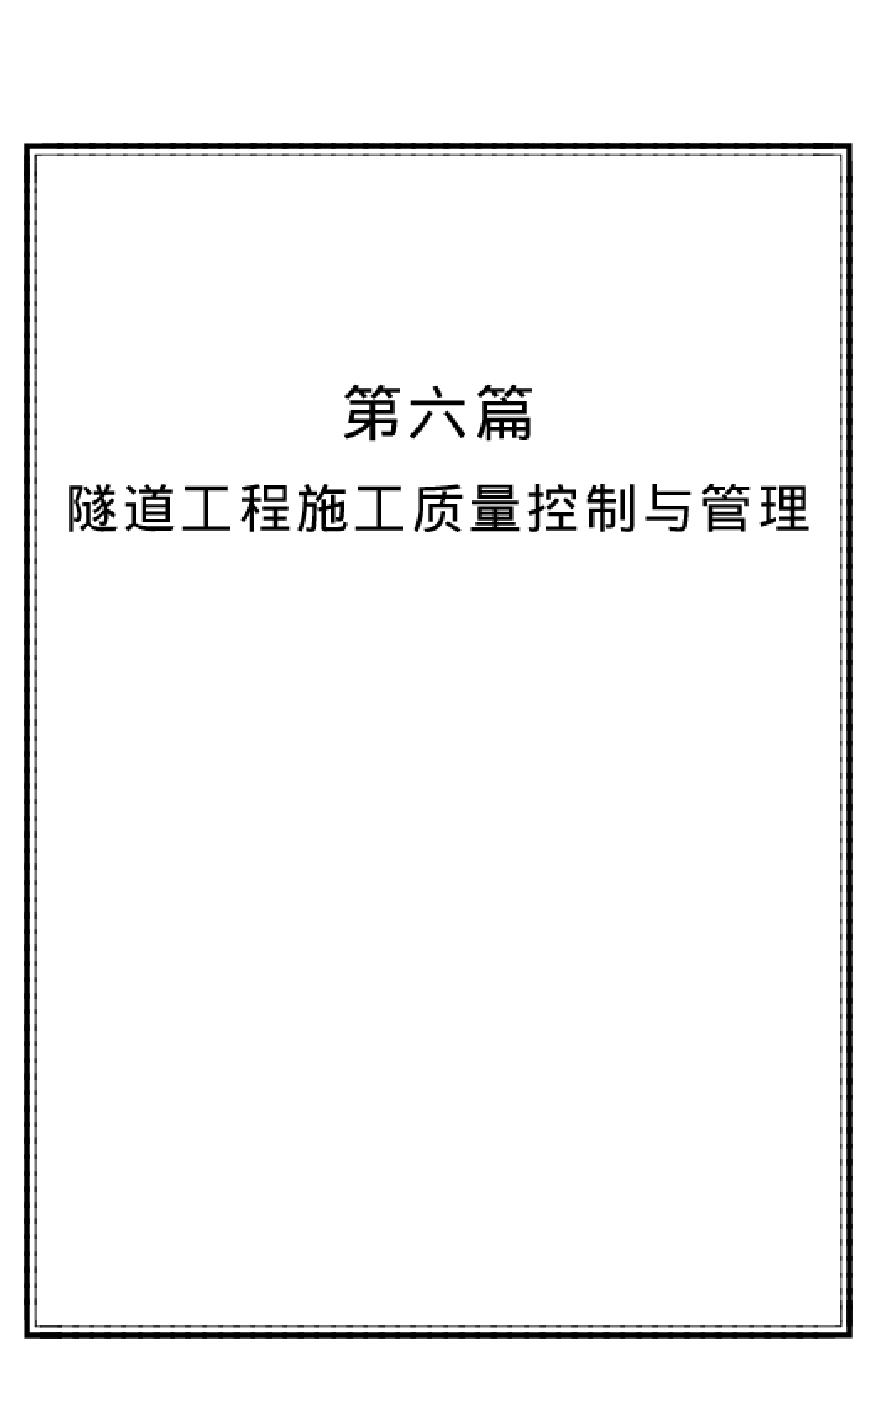 隧道工程质量控制与管理 (3).pdf